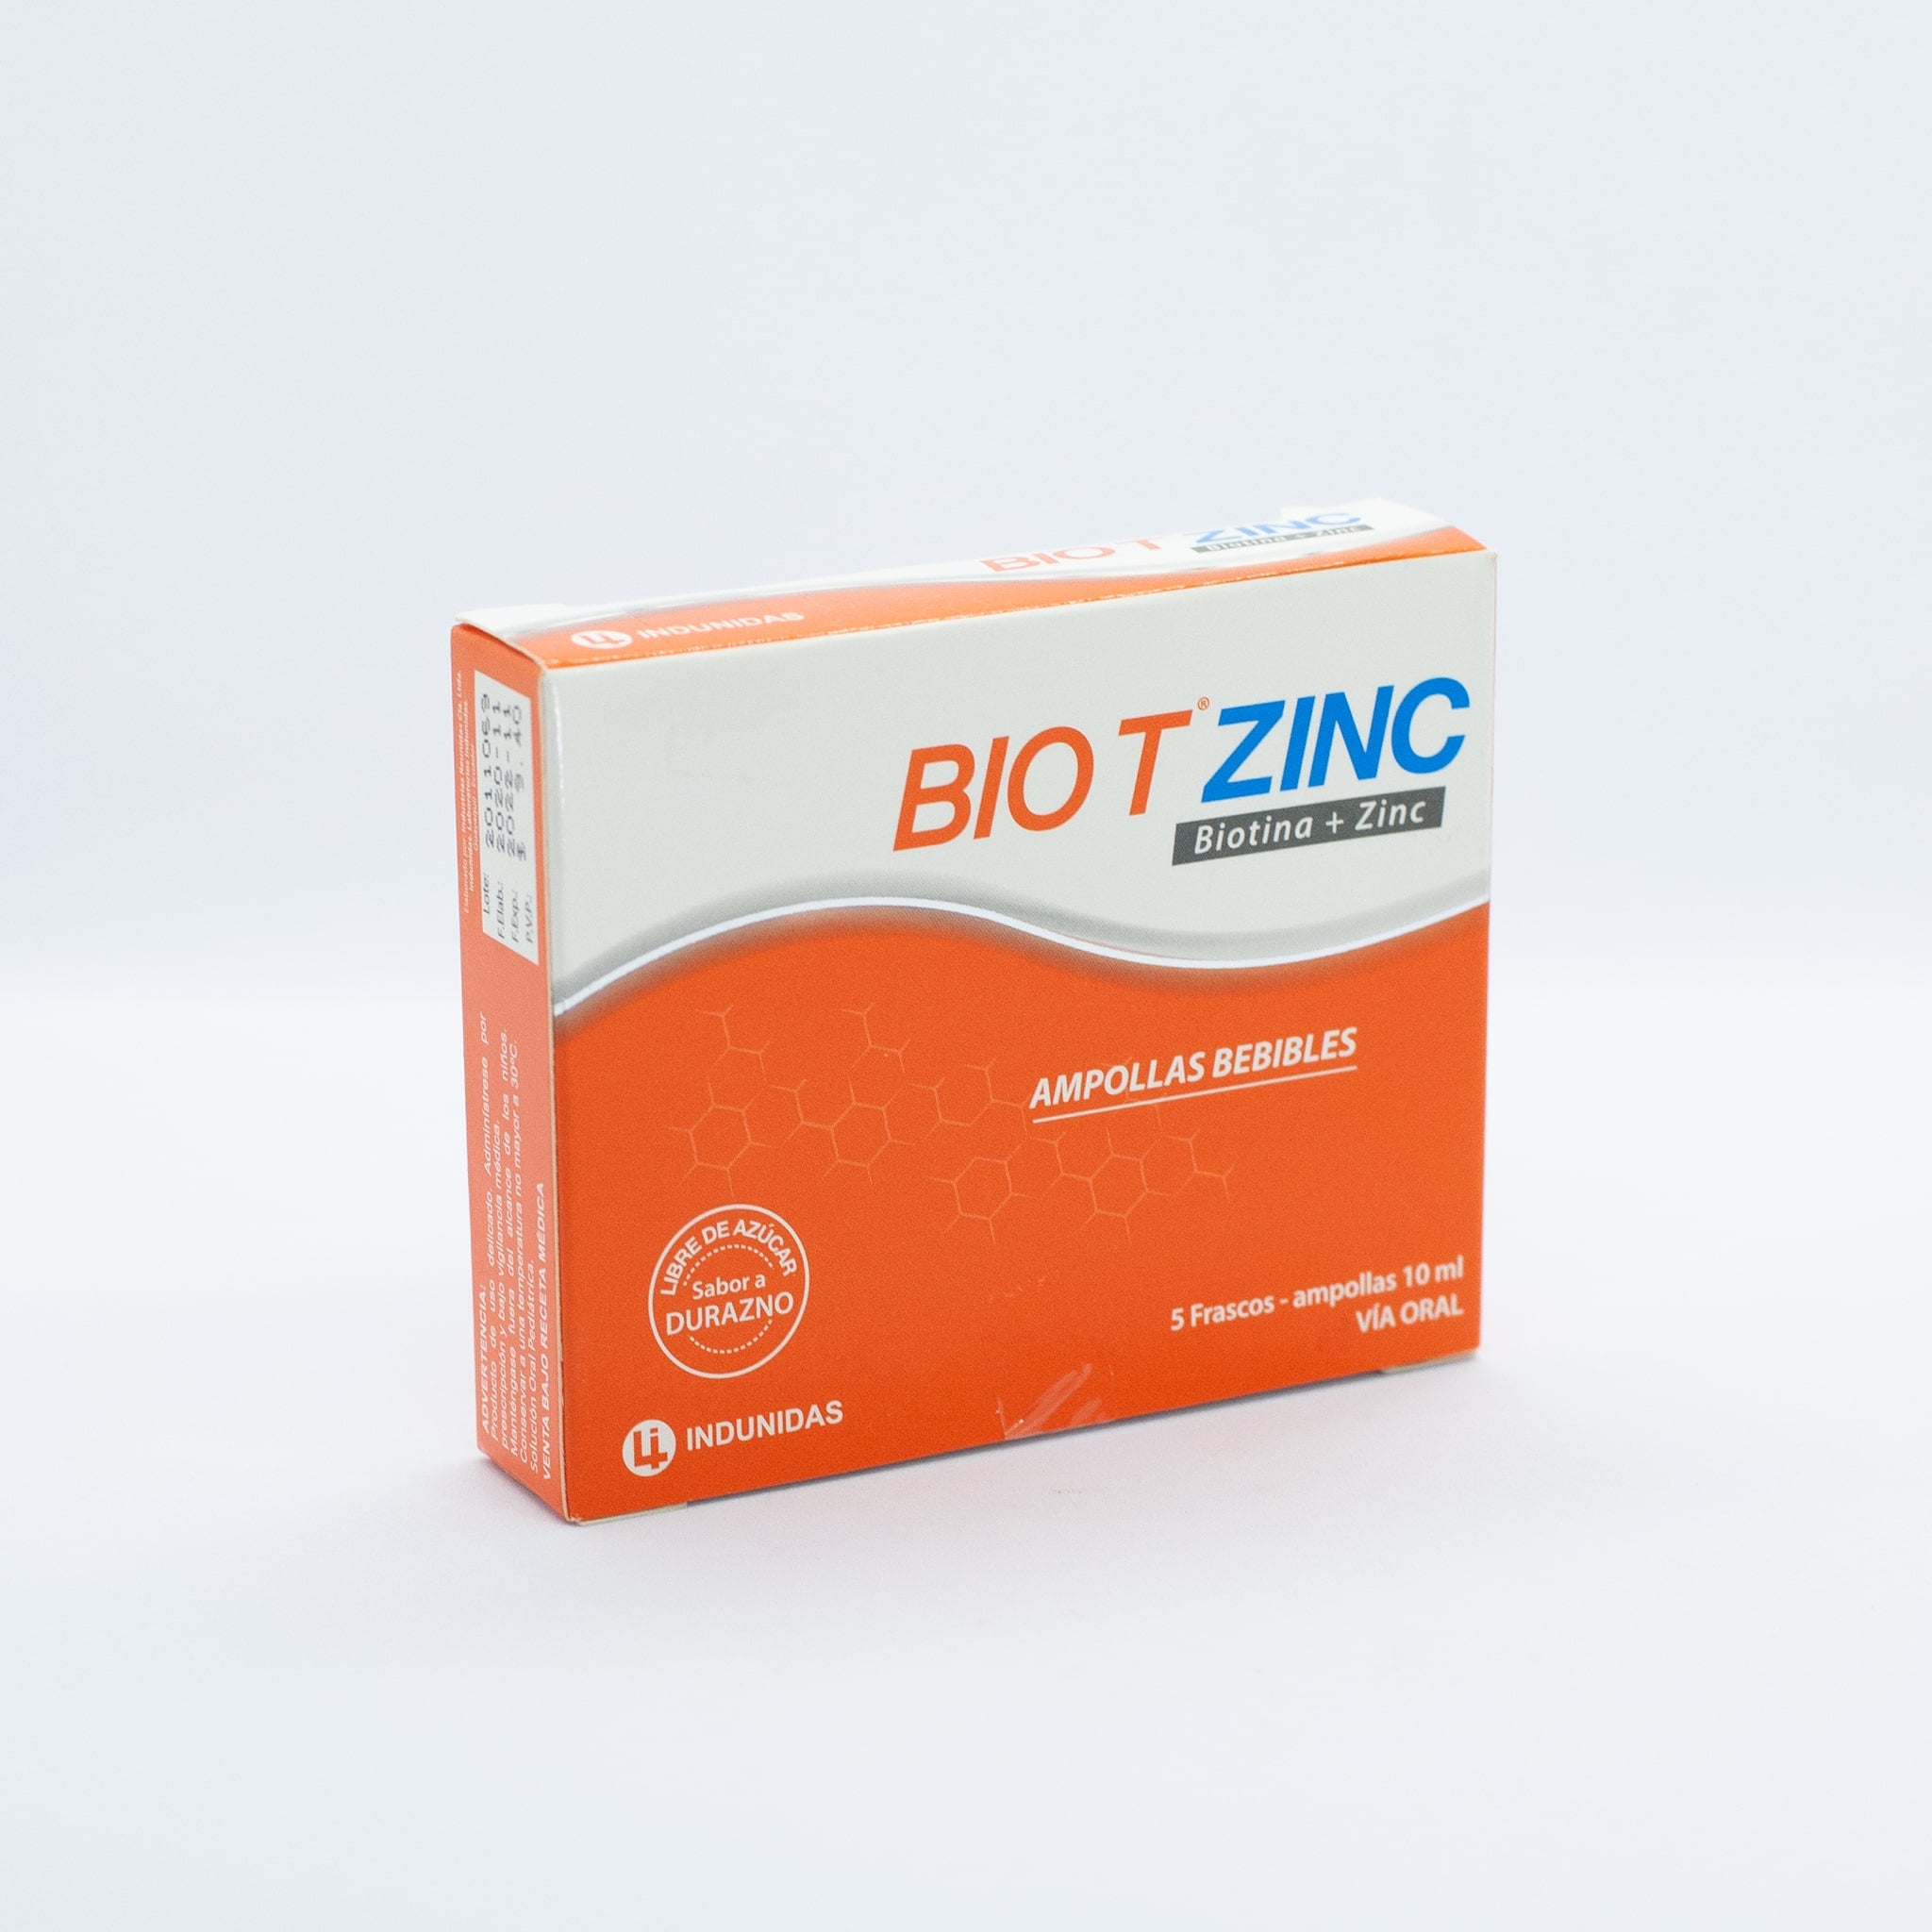 Bio t zinc ampollas